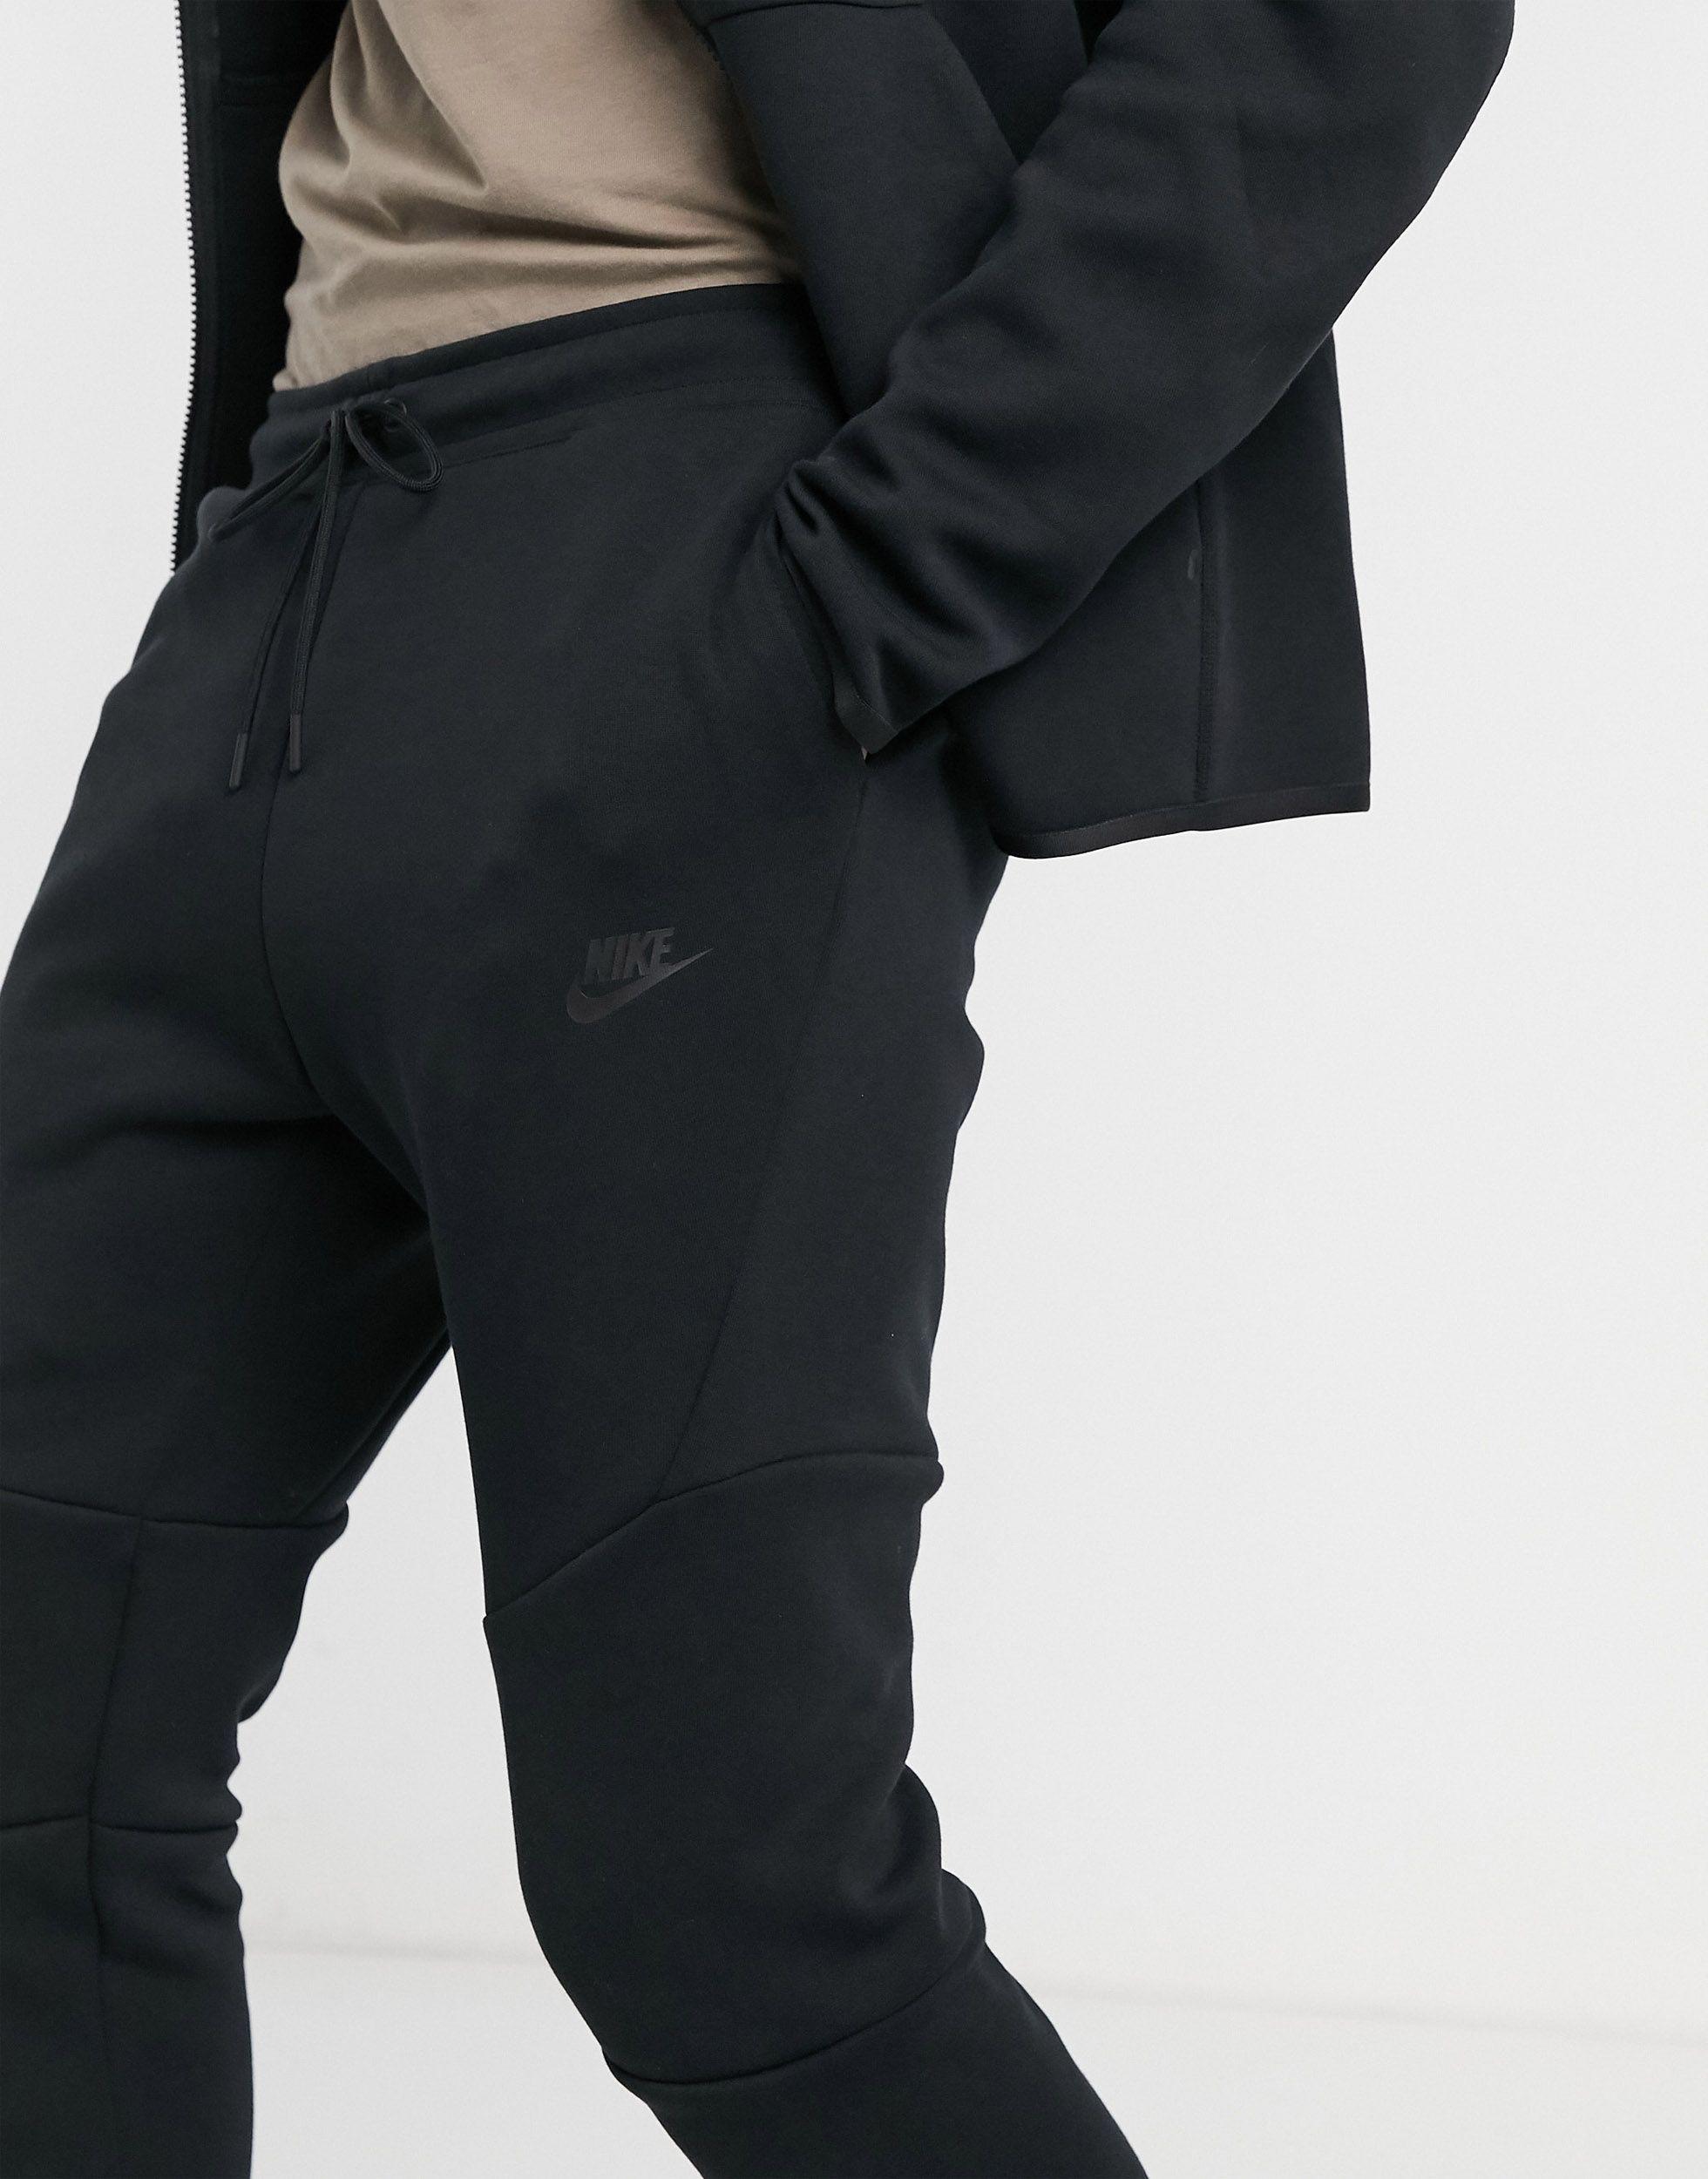 Nike Sportswear Tech Fleece Jogger in Schwarz für Herren - Sparen Sie 50% -  Lyst